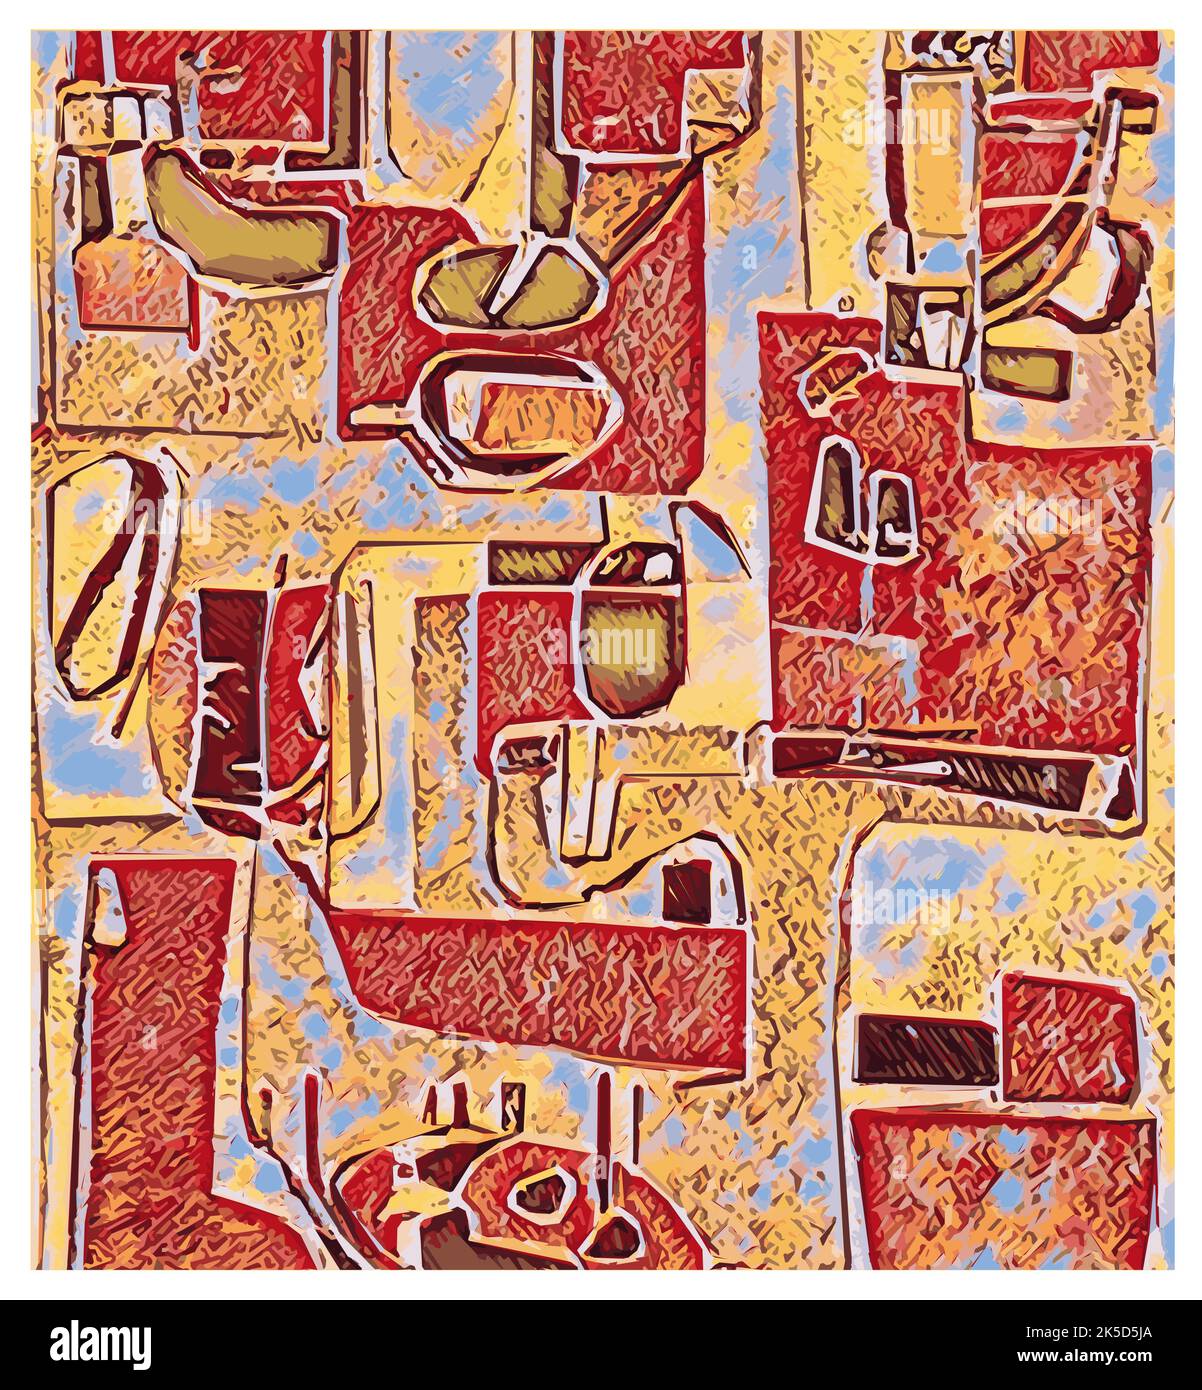 Composizione digitale astratta originale nello stile di Paul Klee - illustrazione vettoriale (ideale per la stampa su tessuto o carta, poster o carta da parati, hou Illustrazione Vettoriale